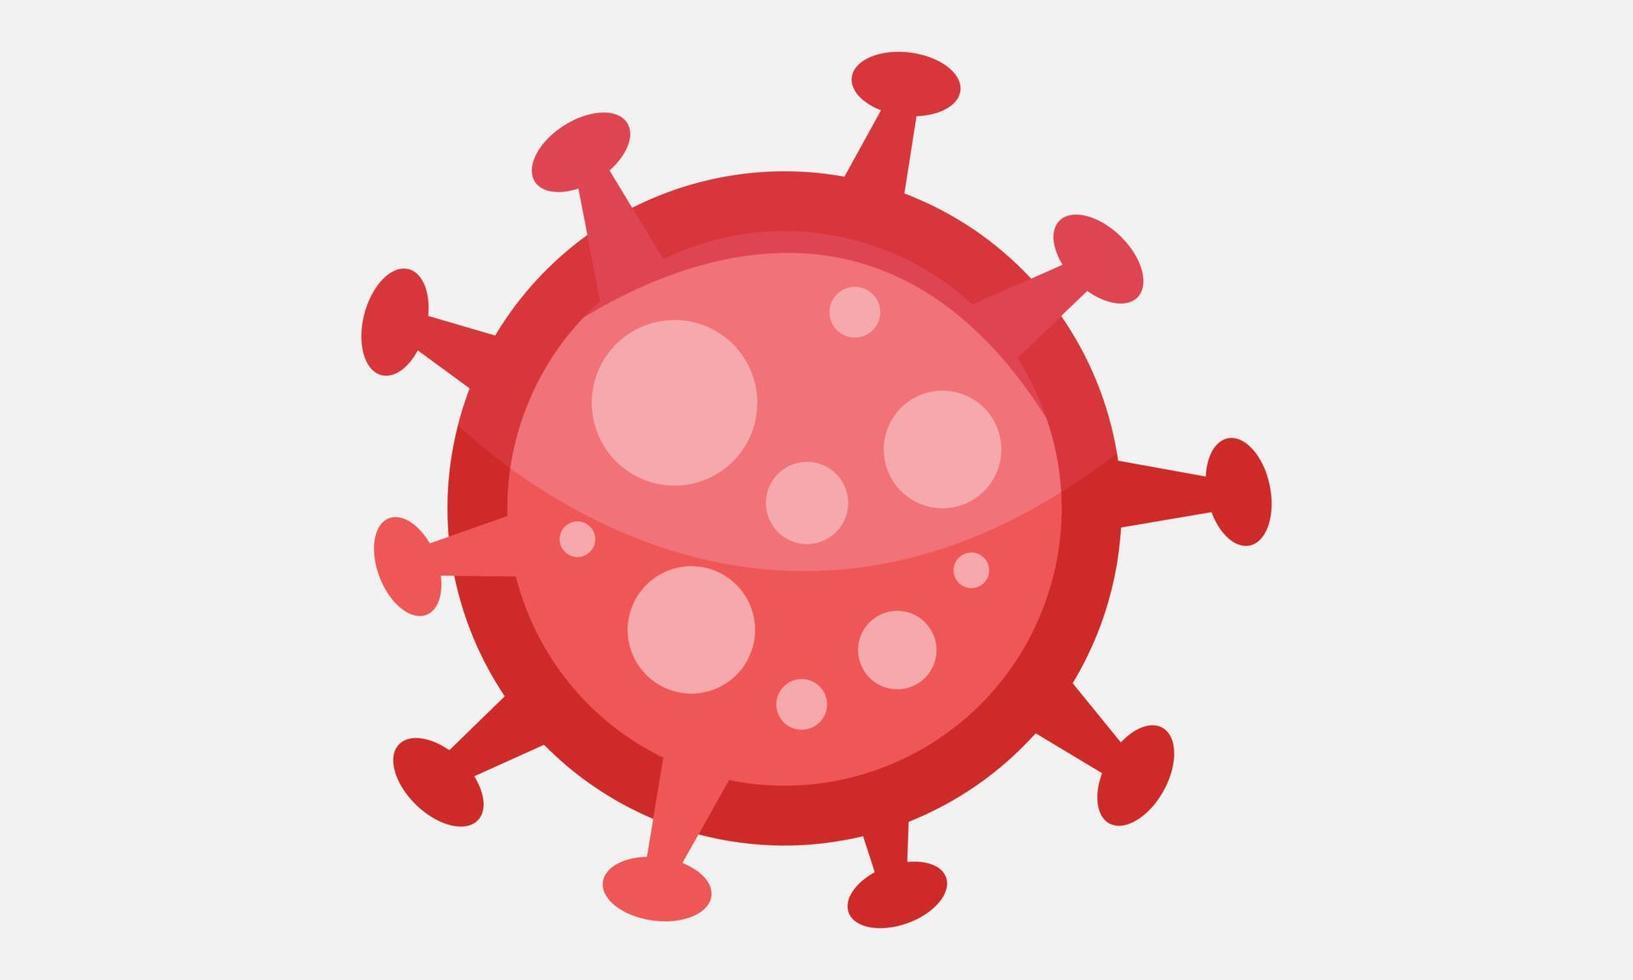 virus corona vettoriale, icona covid-19, virus pandemico su sfondo bianco vettore